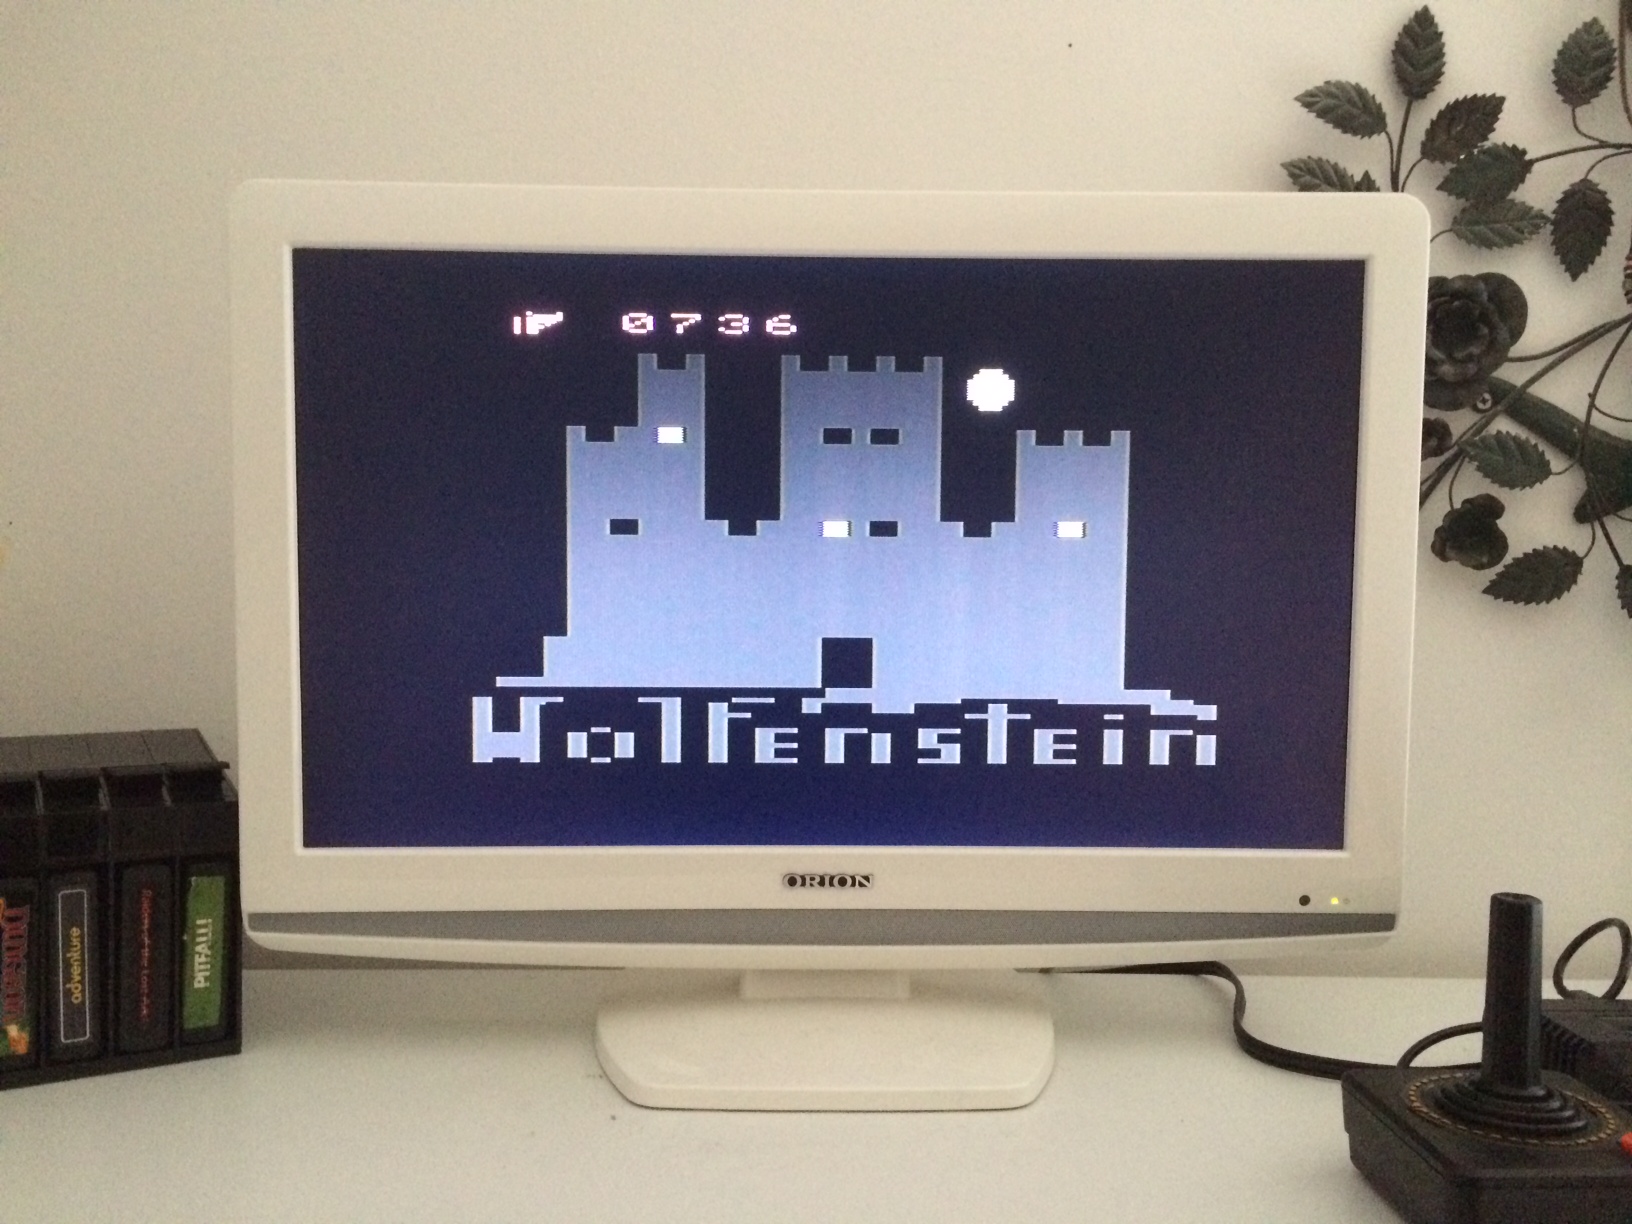 Wolfenstein VCS 736 points